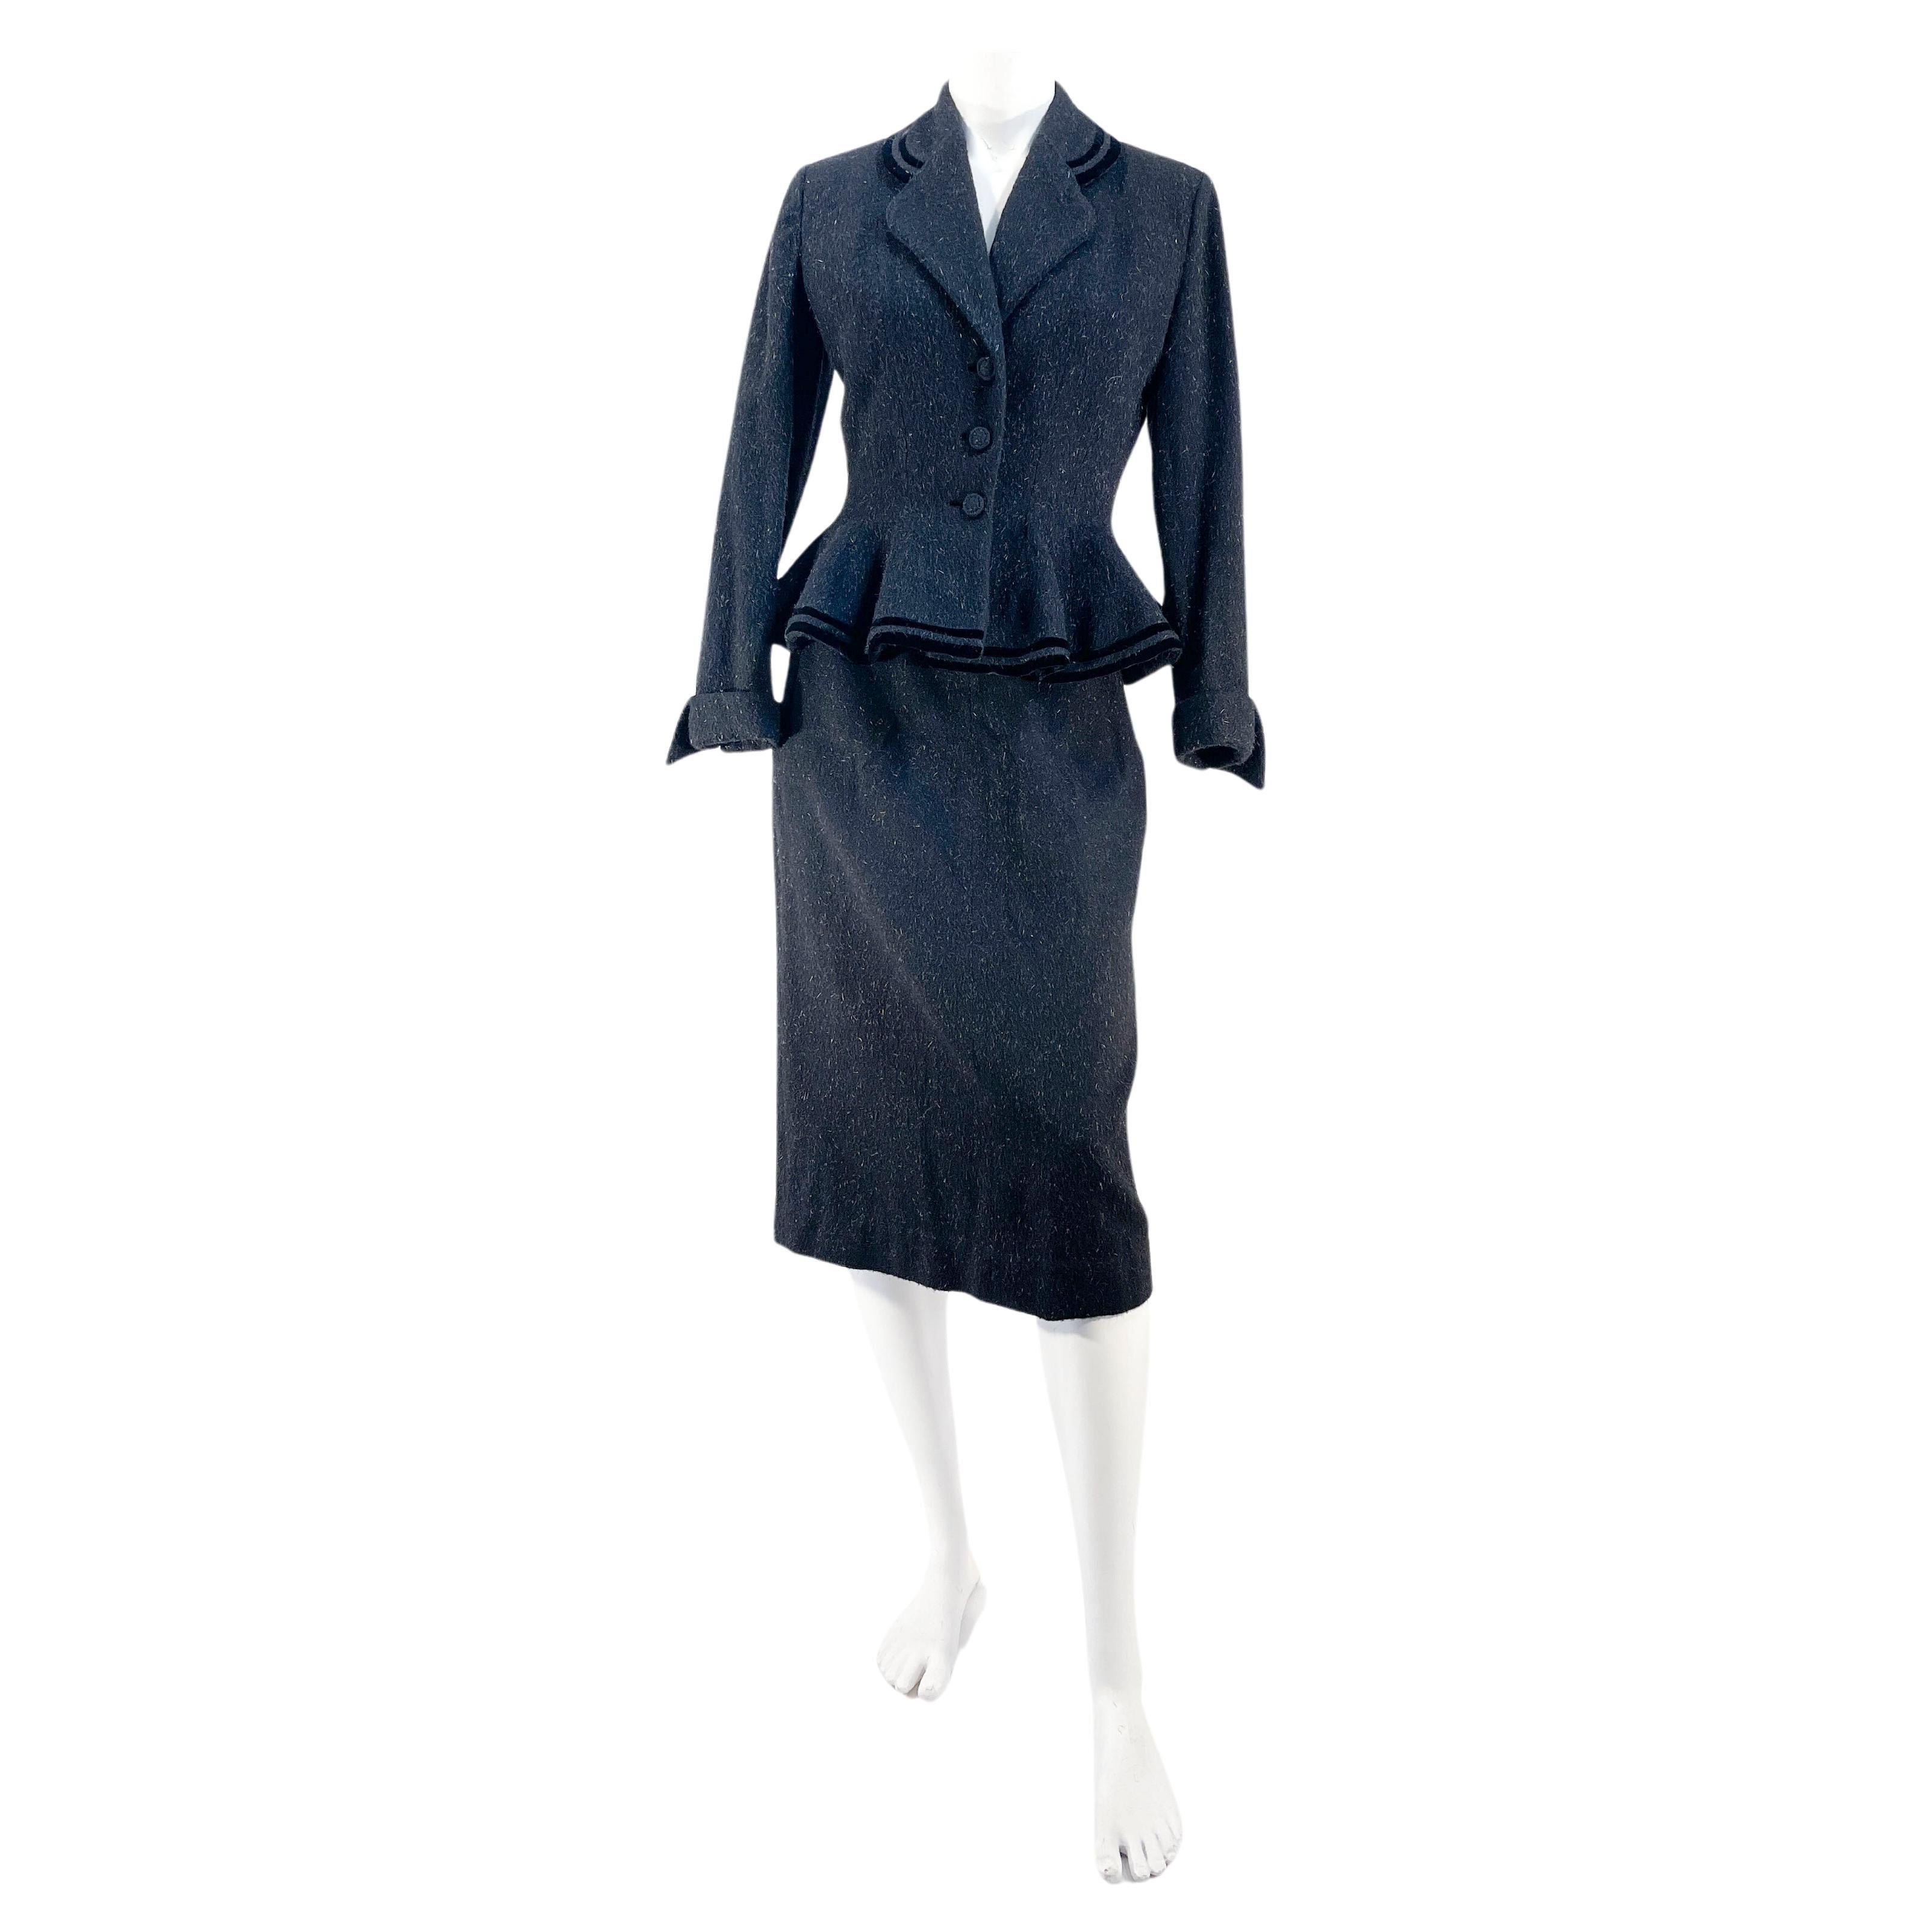 1940s/1950s Lilli Ann Black Wool Suit